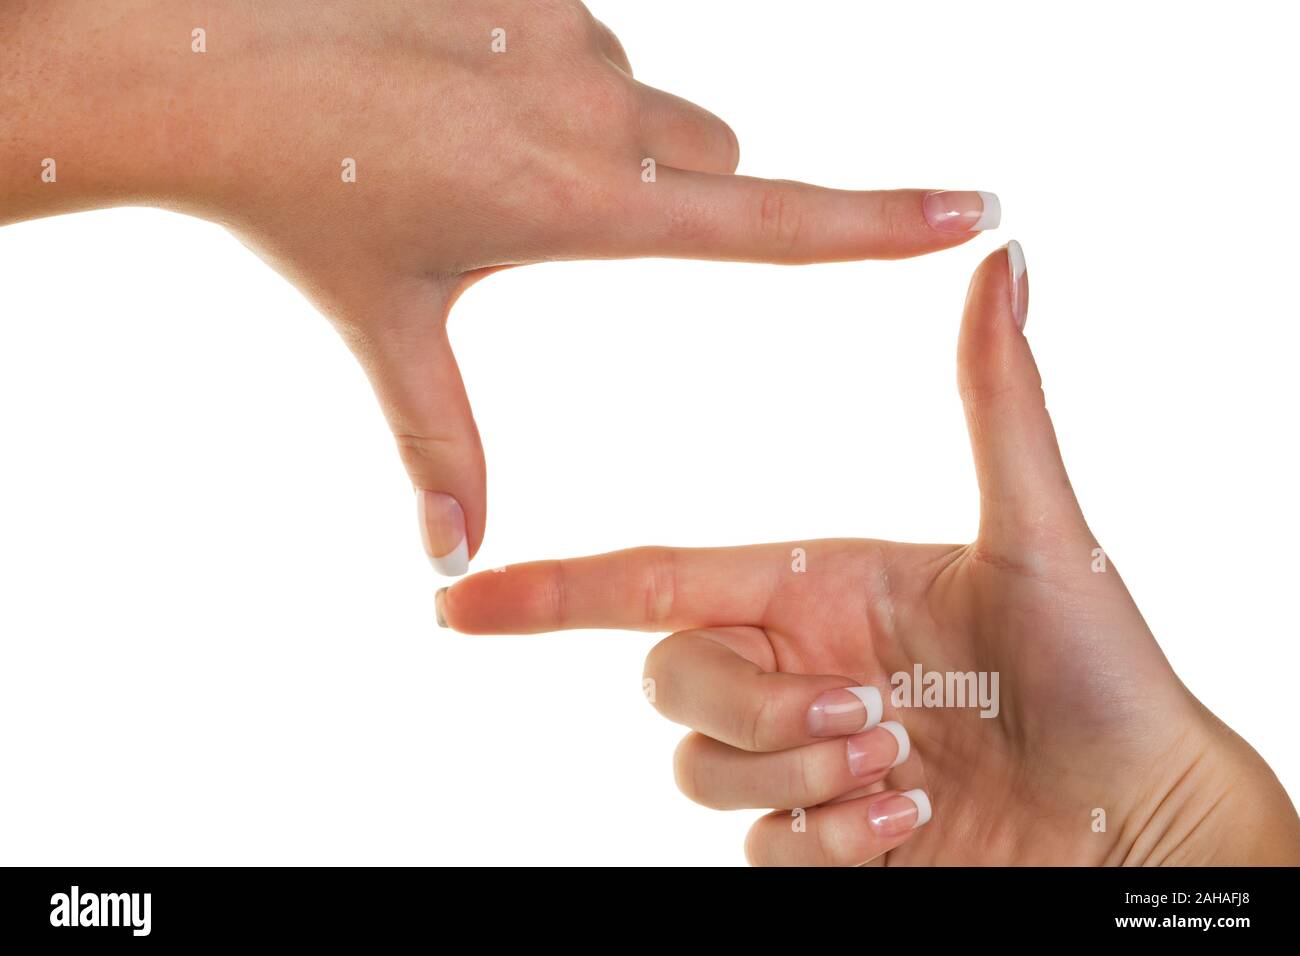 Hände simulieren mit den Fingern einen rechteckigen Rahmen. Symbolfoto für Engstirnigkeit und Durchblick, MR: Yes Stock Photo